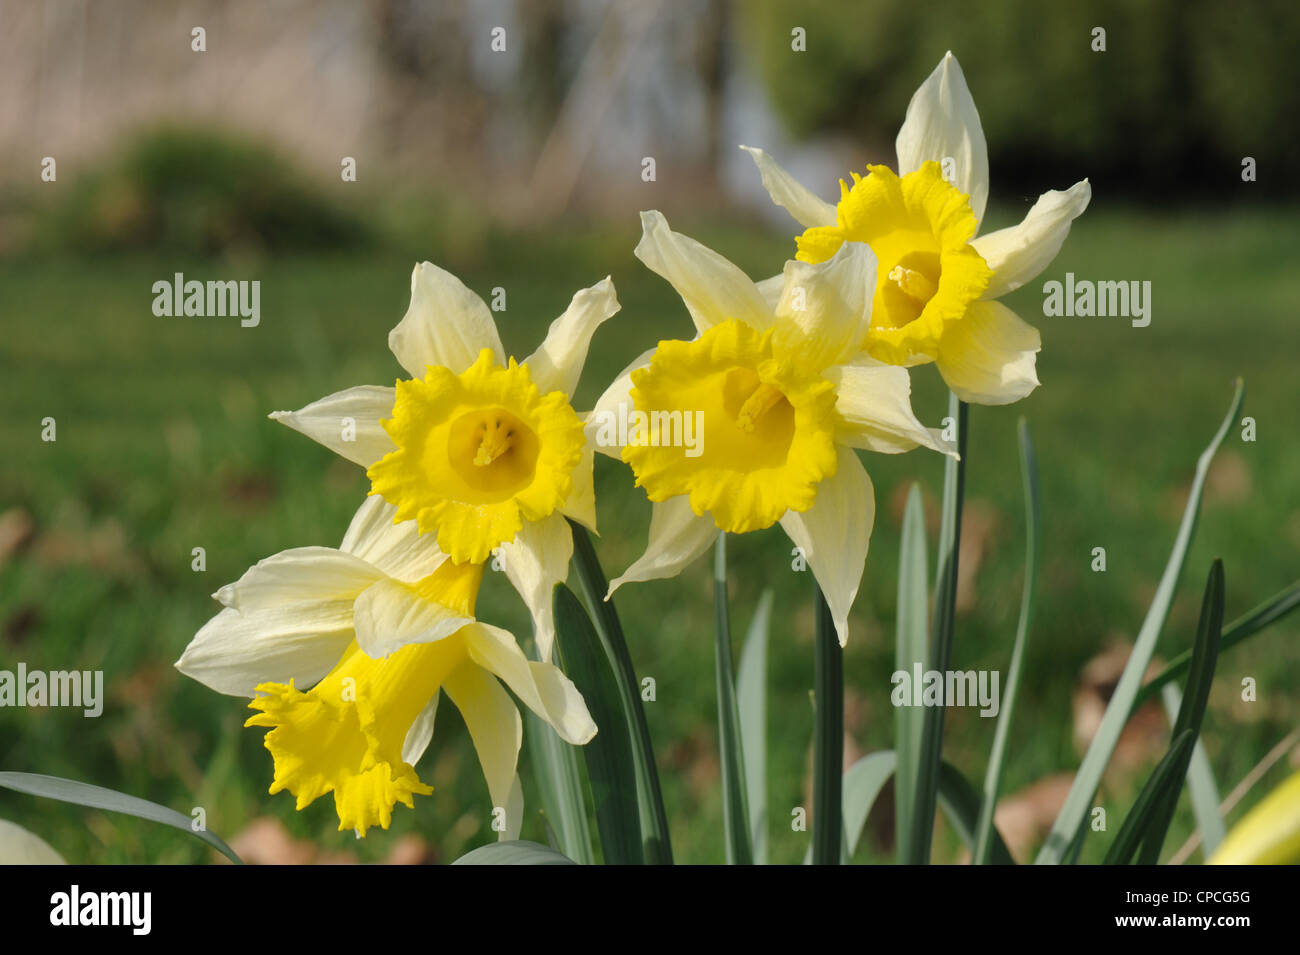 Une Jonquille sauvage ou prêté lily (Narcissus pseudonarcissus) fleurs dans les prairies Banque D'Images